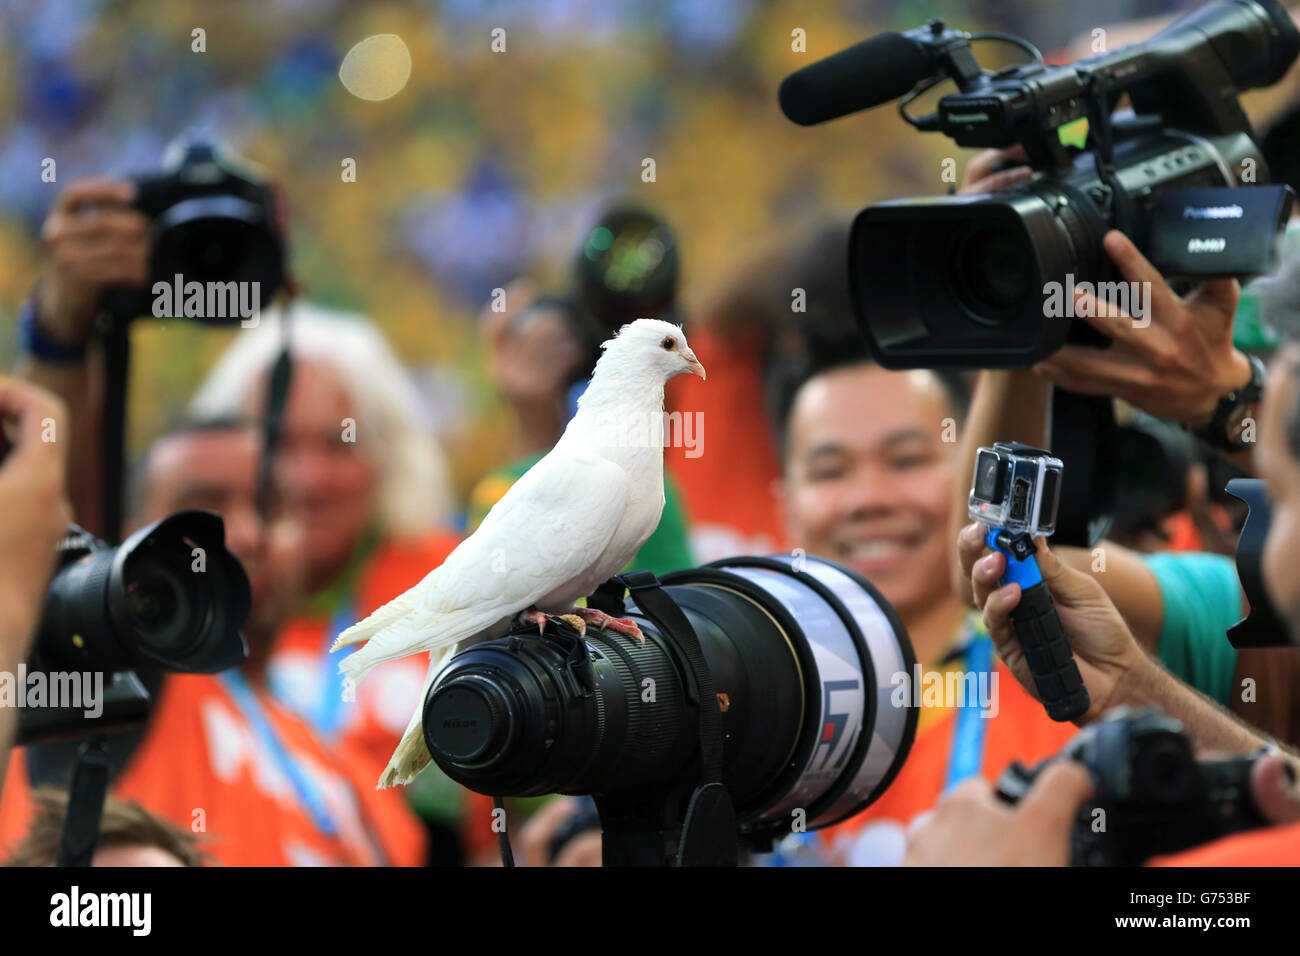 Una colomba bianca rilasciata prima del gioco si trova su un obiettivo della telecamera all'Arena Corinthians Foto Stock